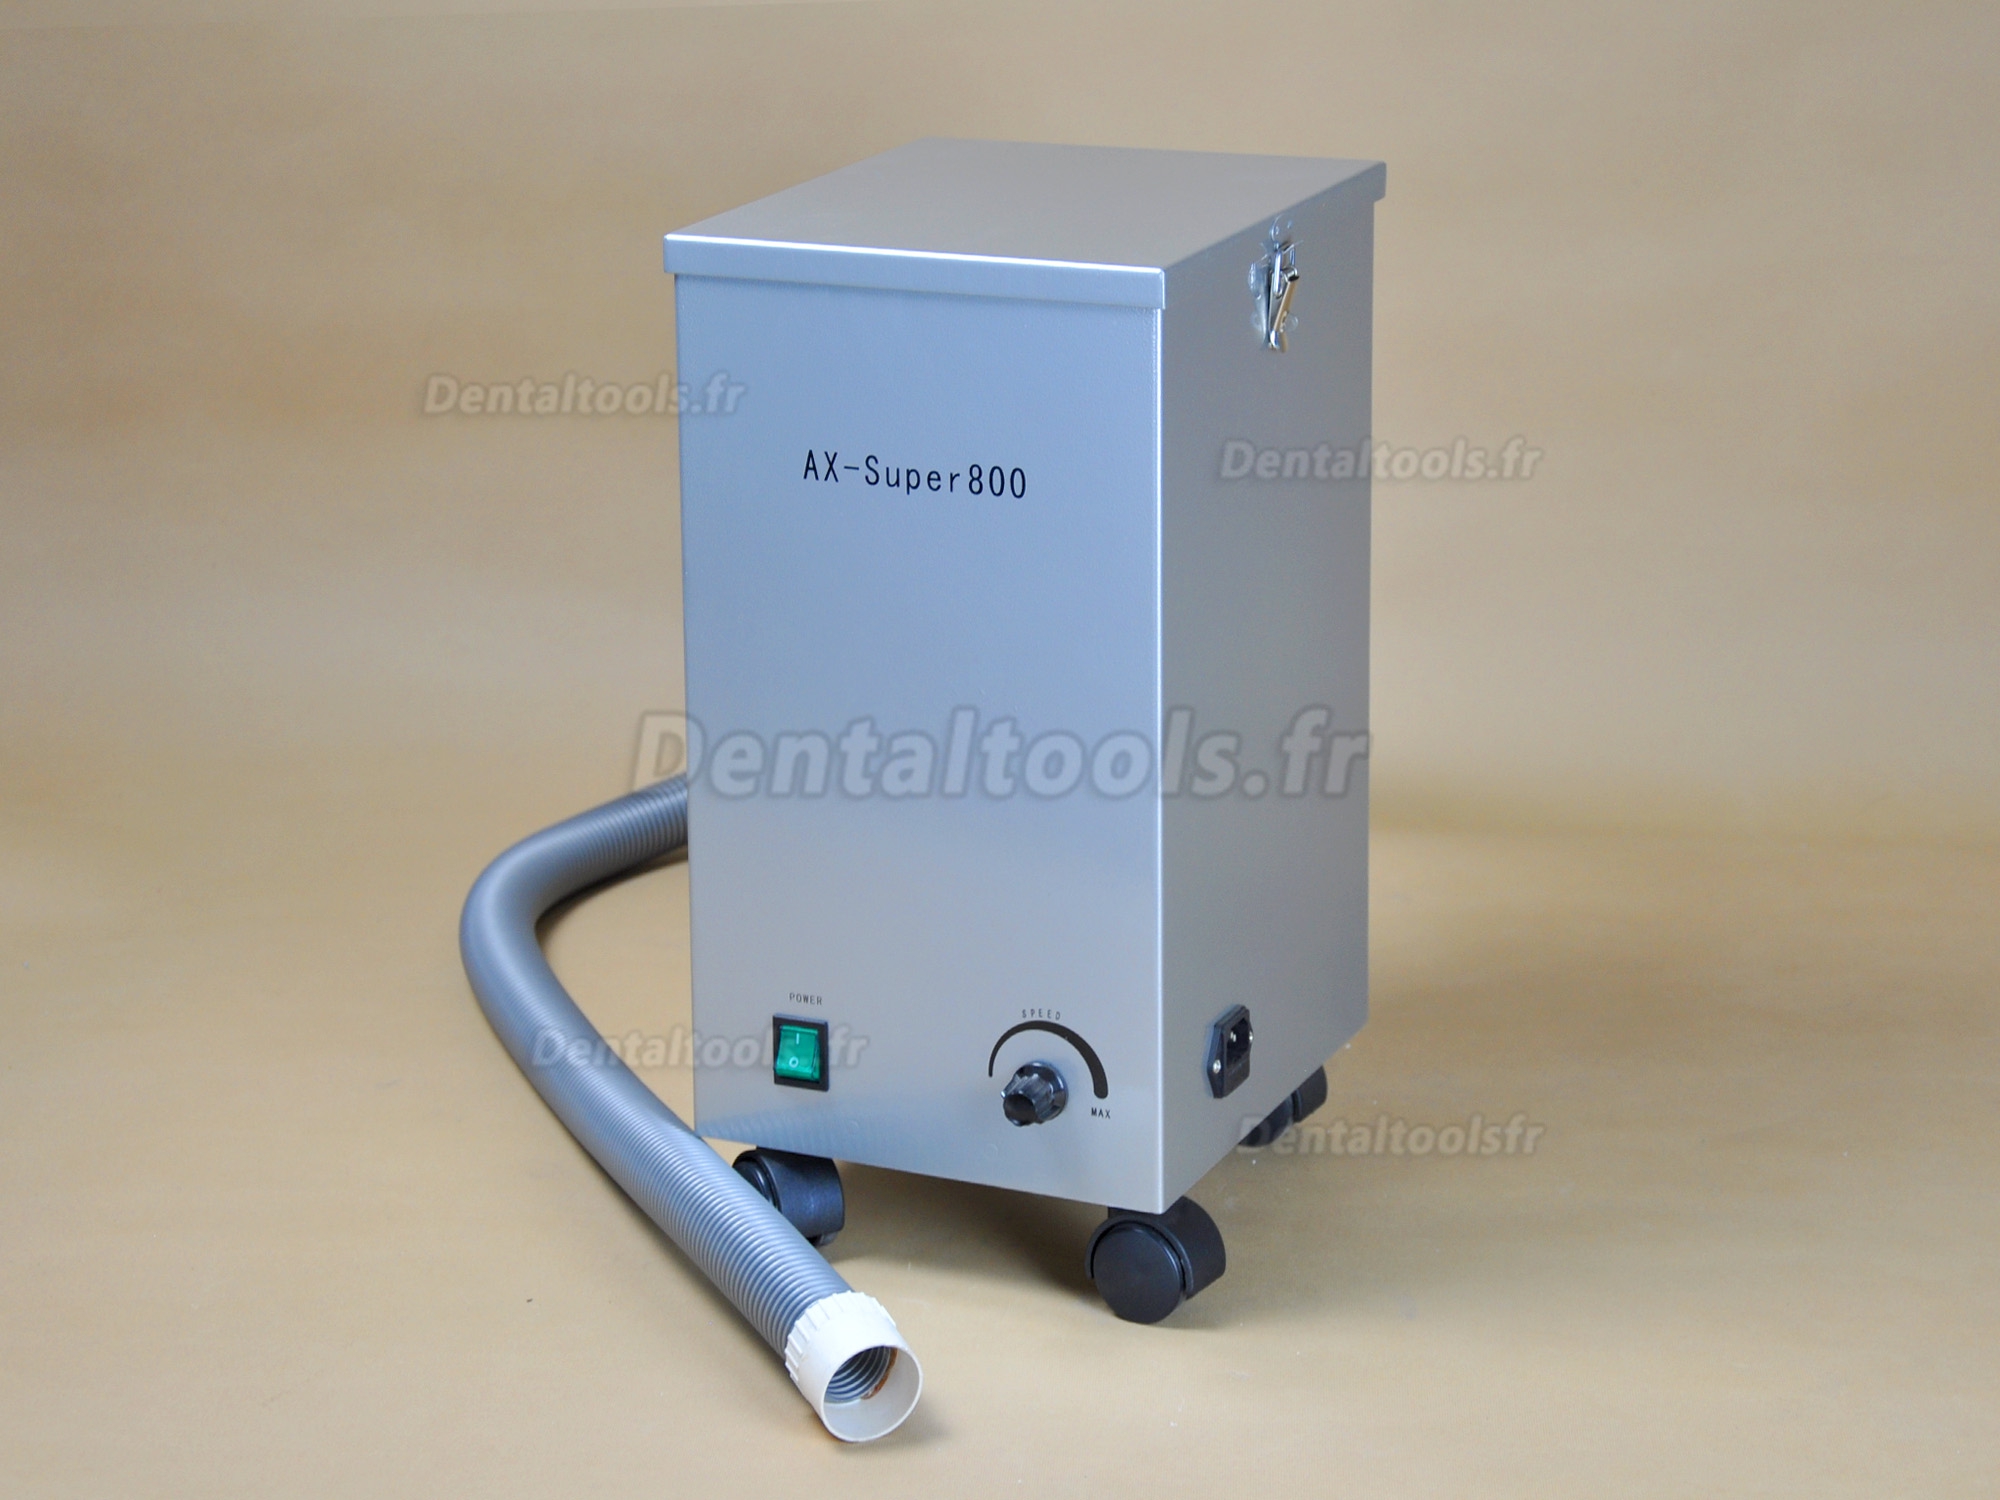 Super800 Aspirateur de poussière laboratoire dental